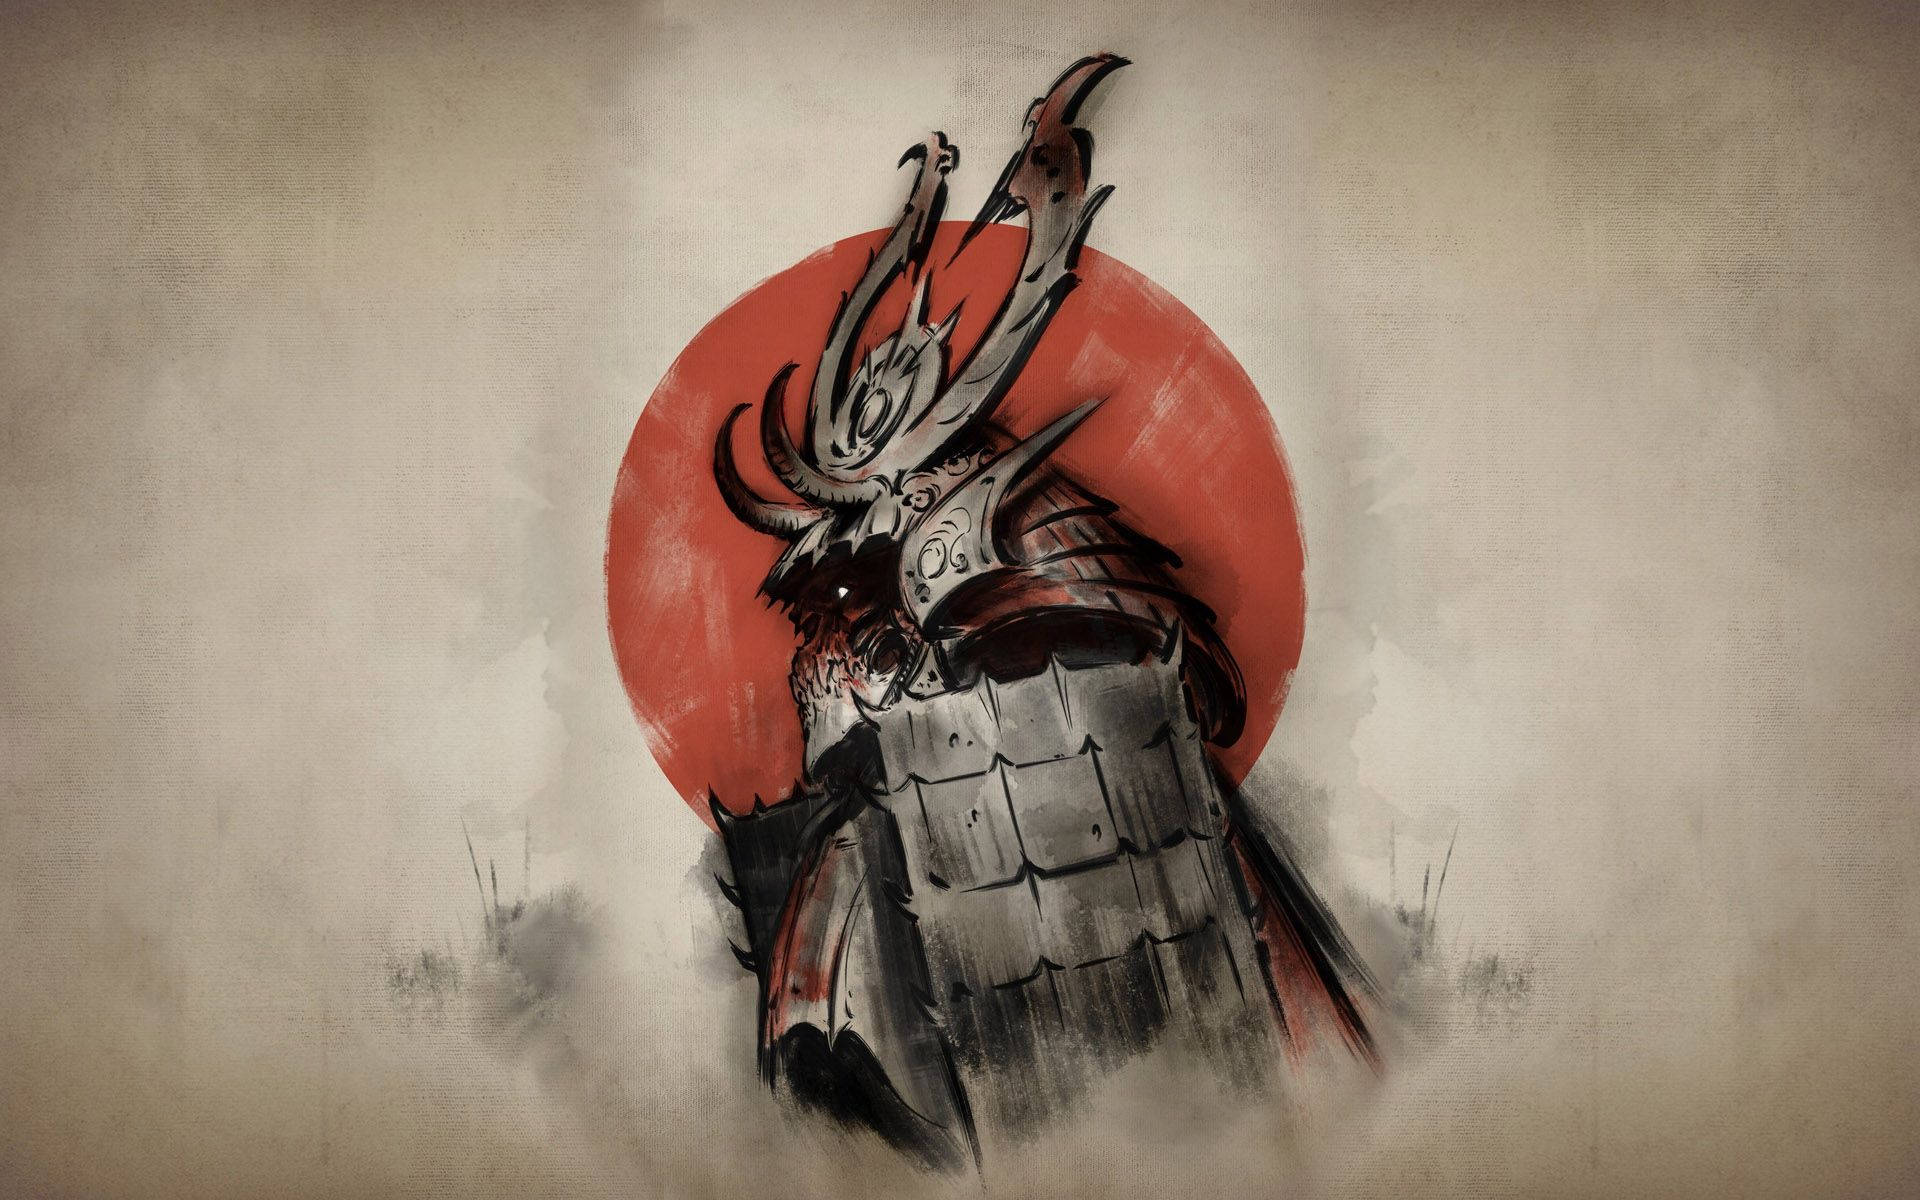 Denne livlige maleri viser en klassisk Samurai kamp scene. Wallpaper